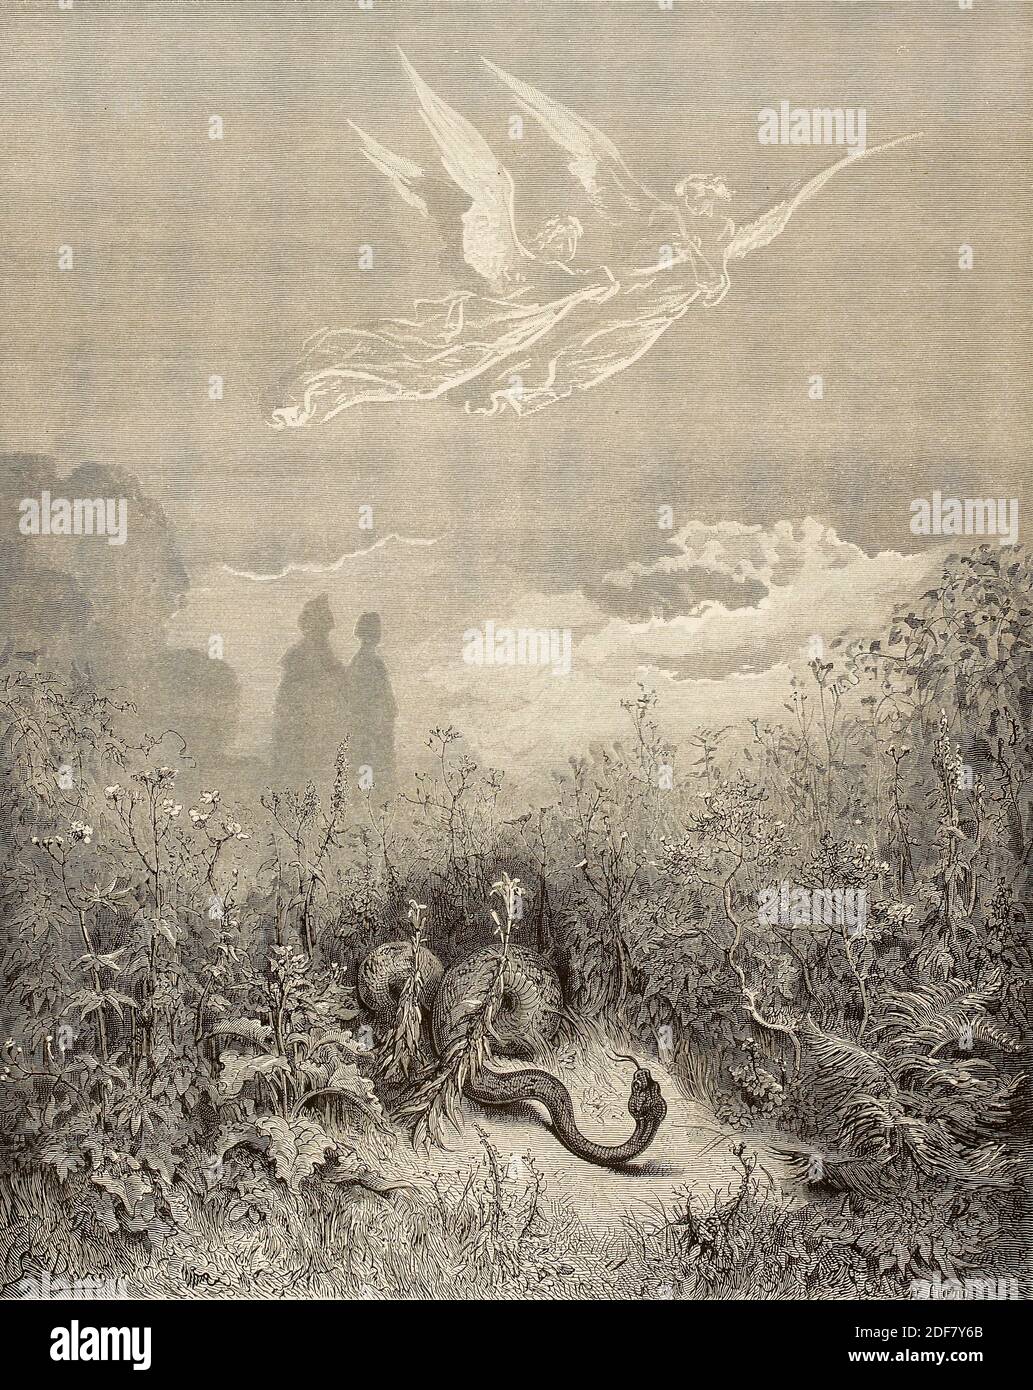 Dante - Divina Commedia - Purgatorio - Ilustración de Gustave Dorè - Canto VIII - la serpiente Foto de stock